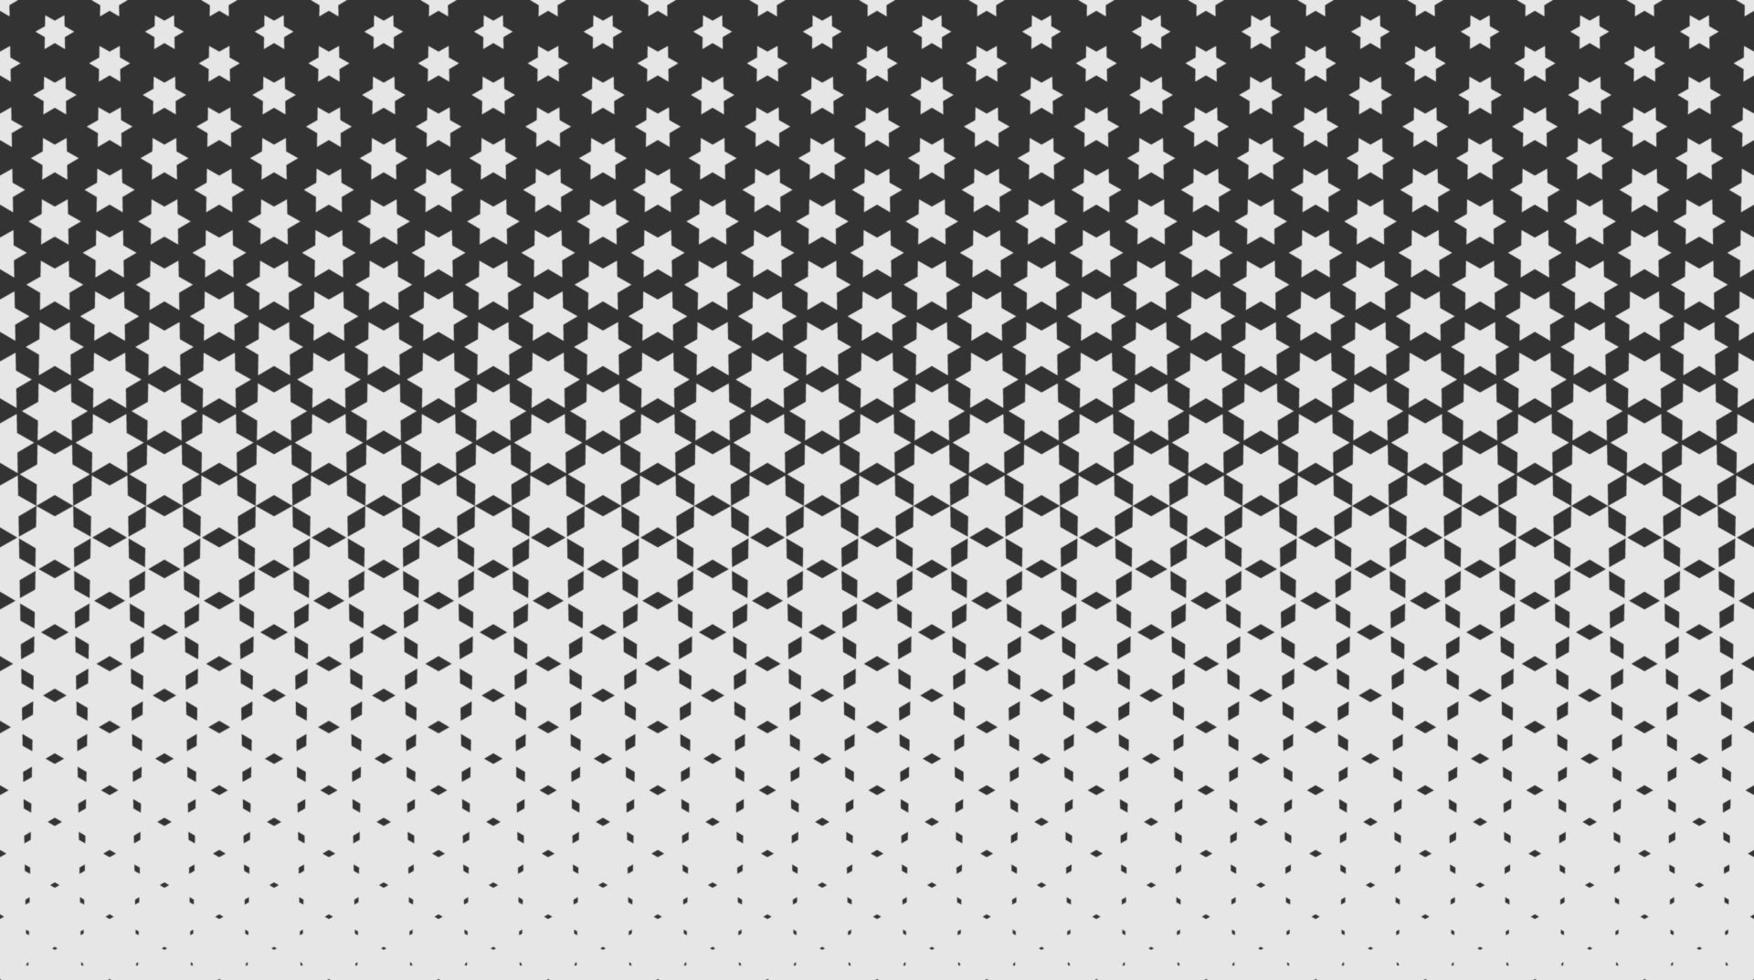 monocromo textura geométrica repetida con estrellas y degradado. vector de patrones sin fisuras para el fondo, papel tapiz, textil, tela, telón de fondo del sitio web. formas simples.